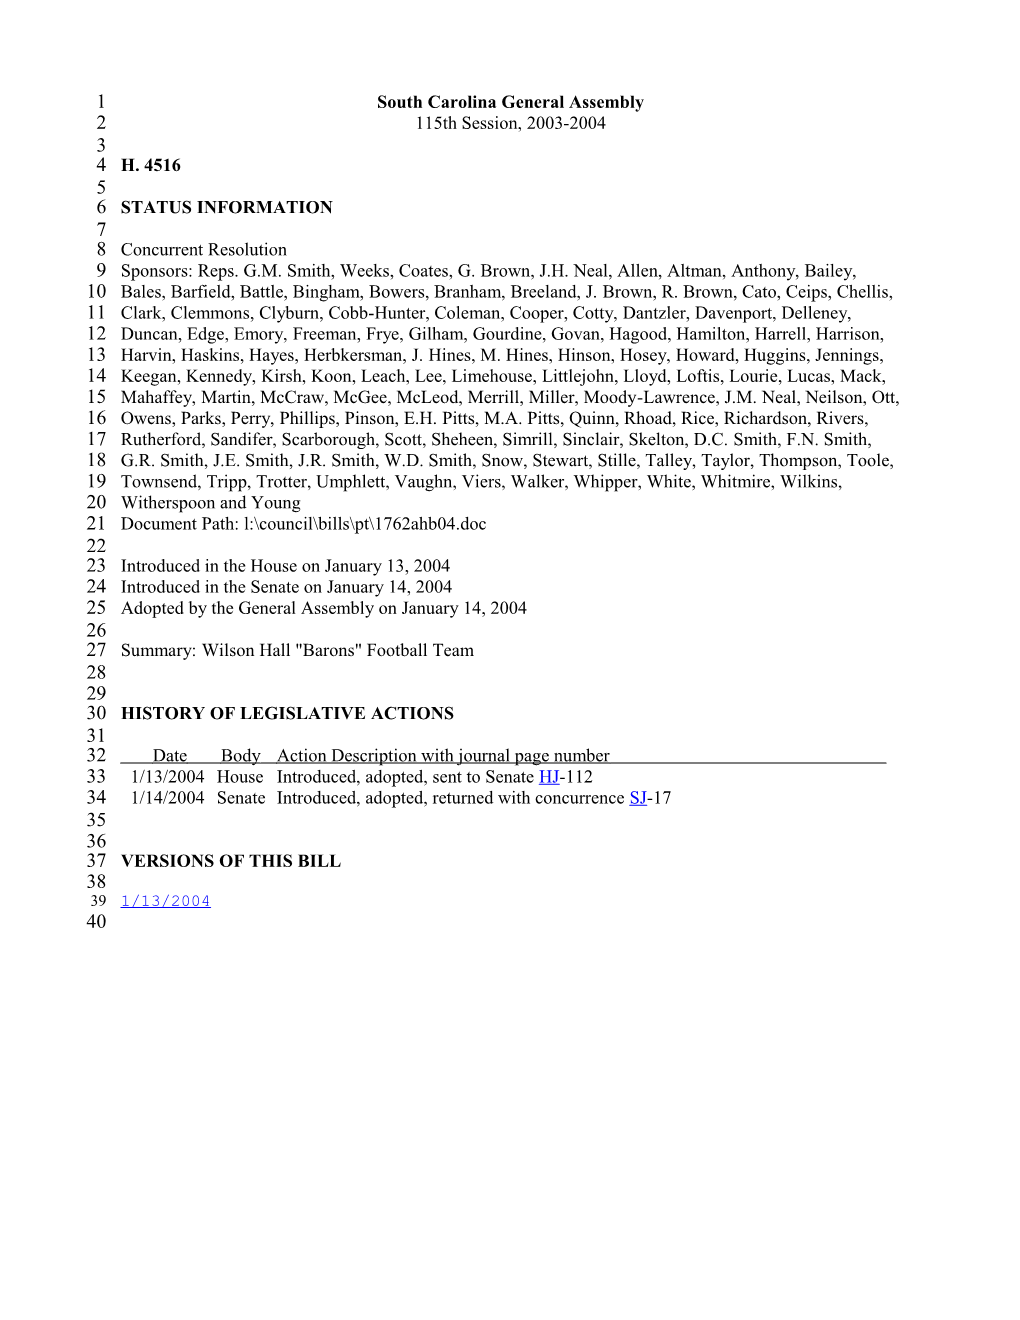 2003-2004 Bill 4516: Wilson Hall Barons Football Team - South Carolina Legislature Online